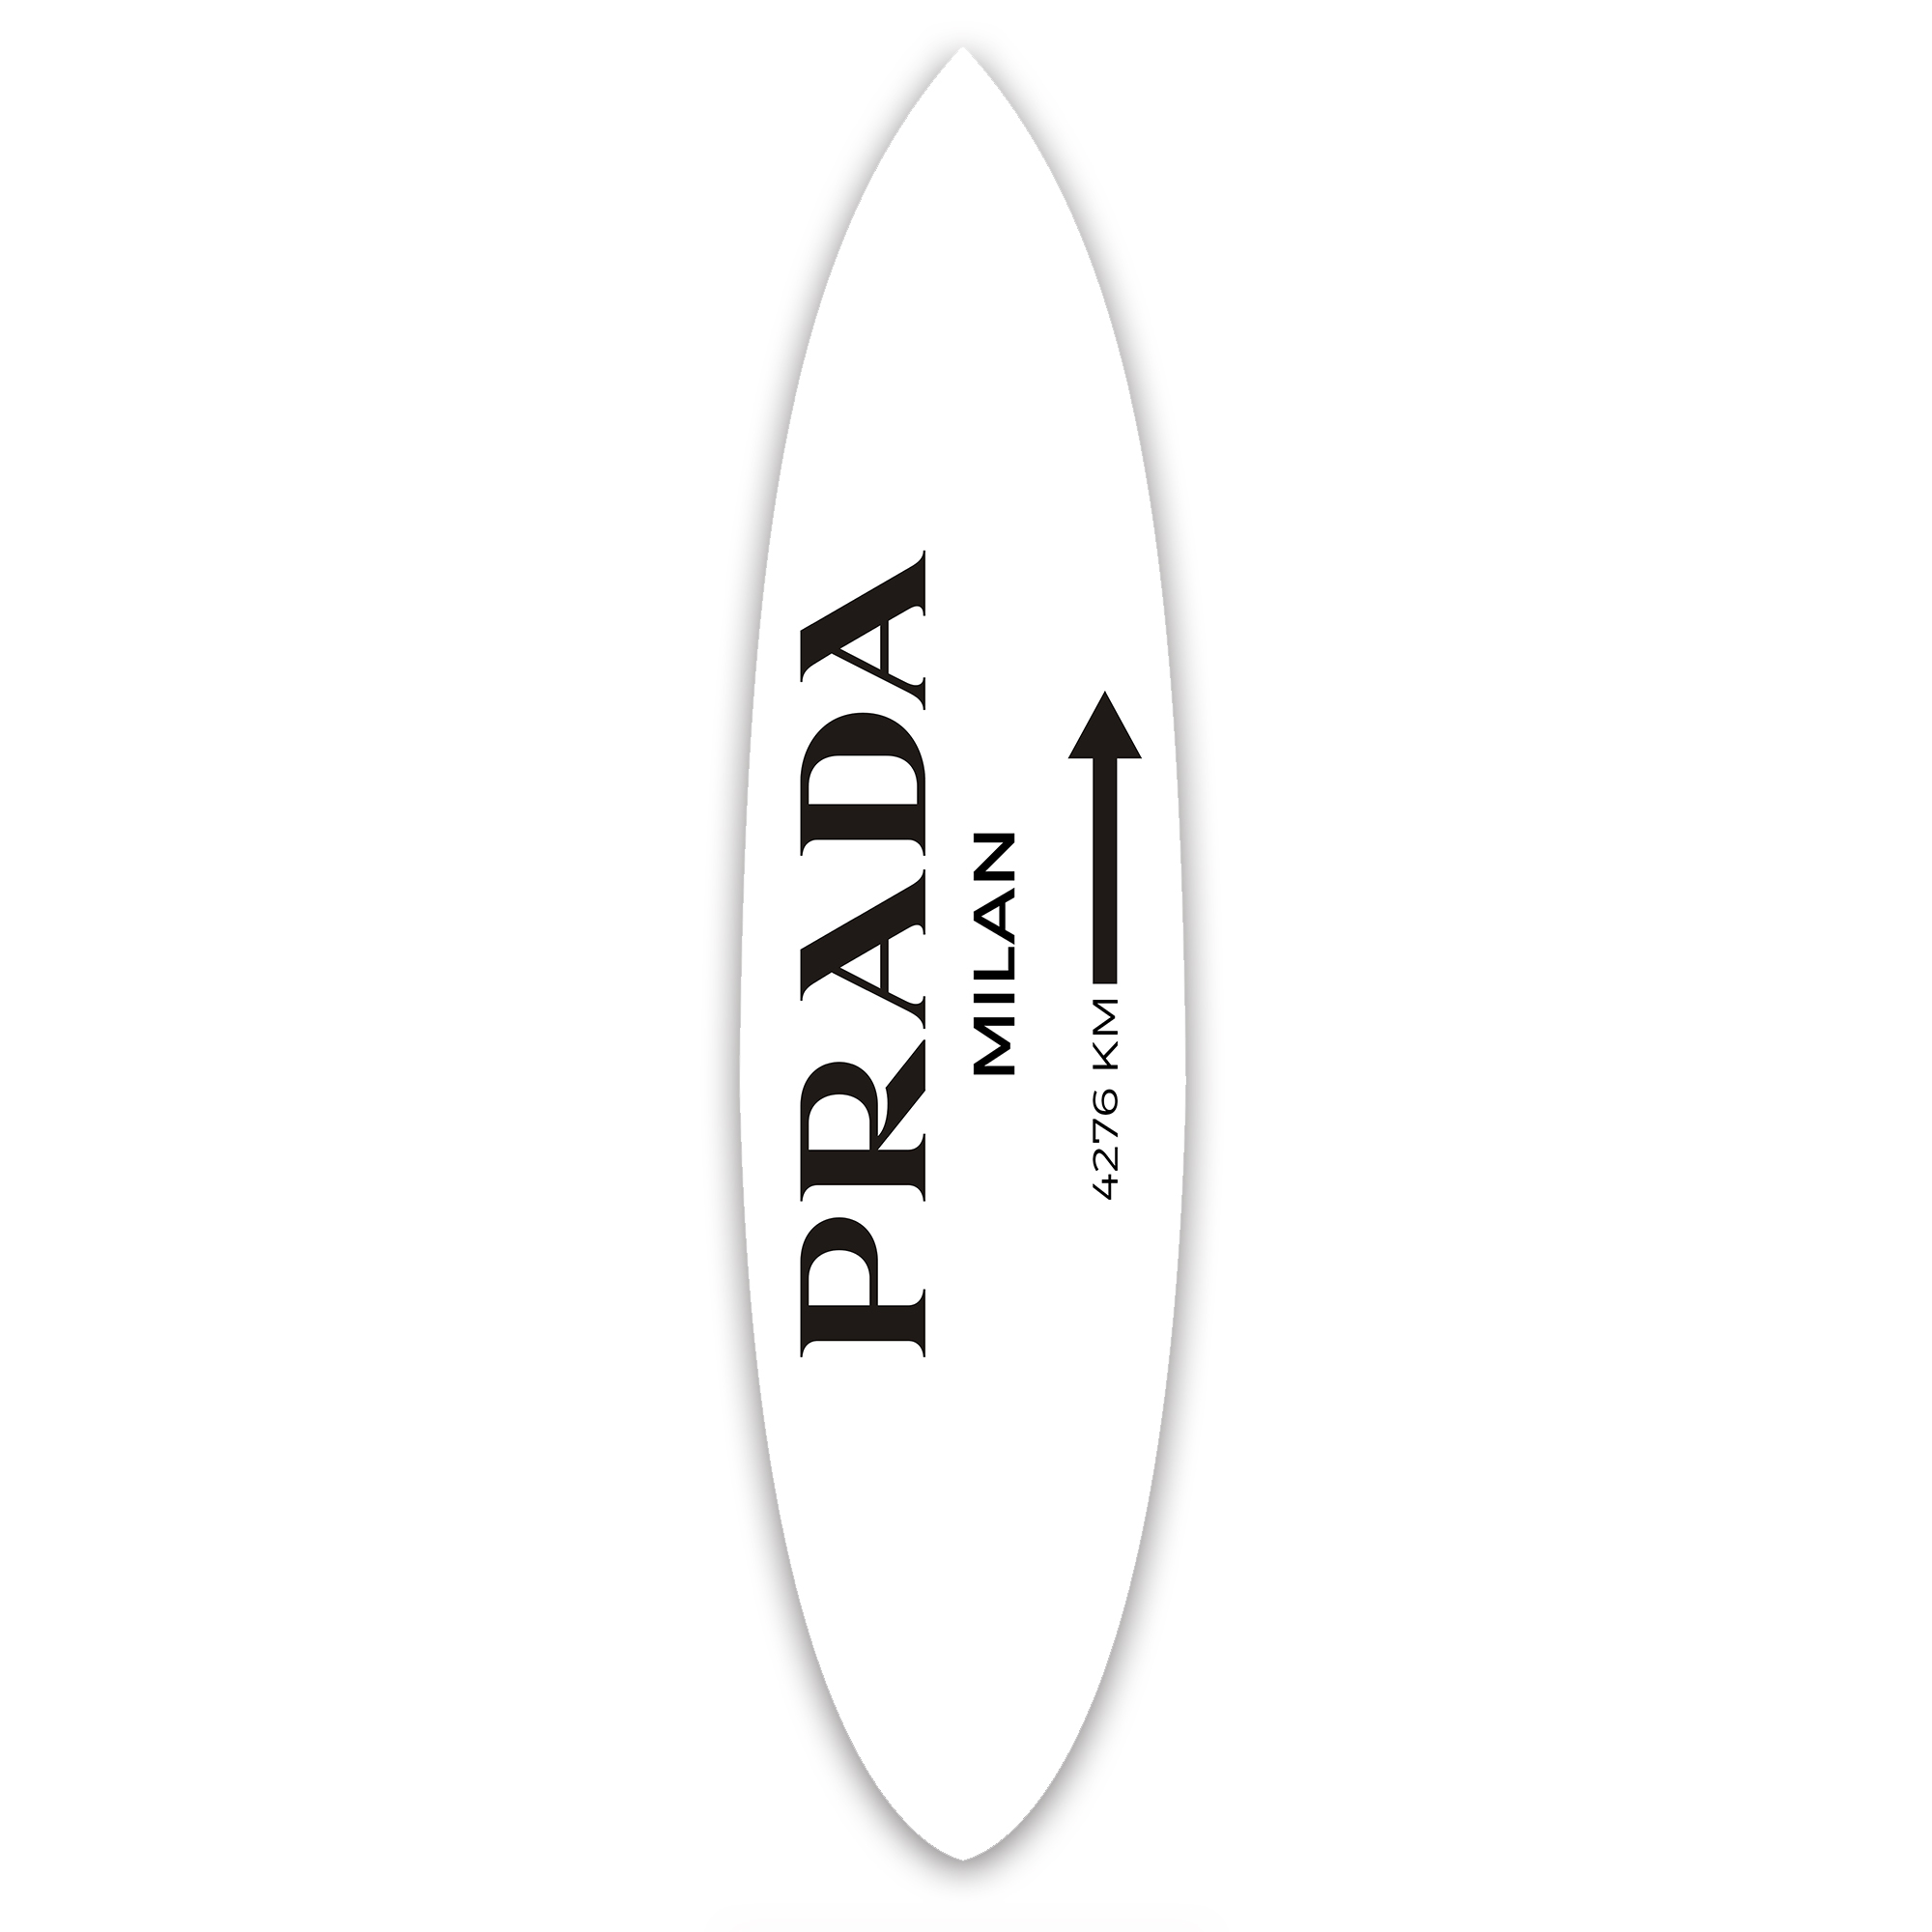 Accents, Prada Surfboard Wood Sign